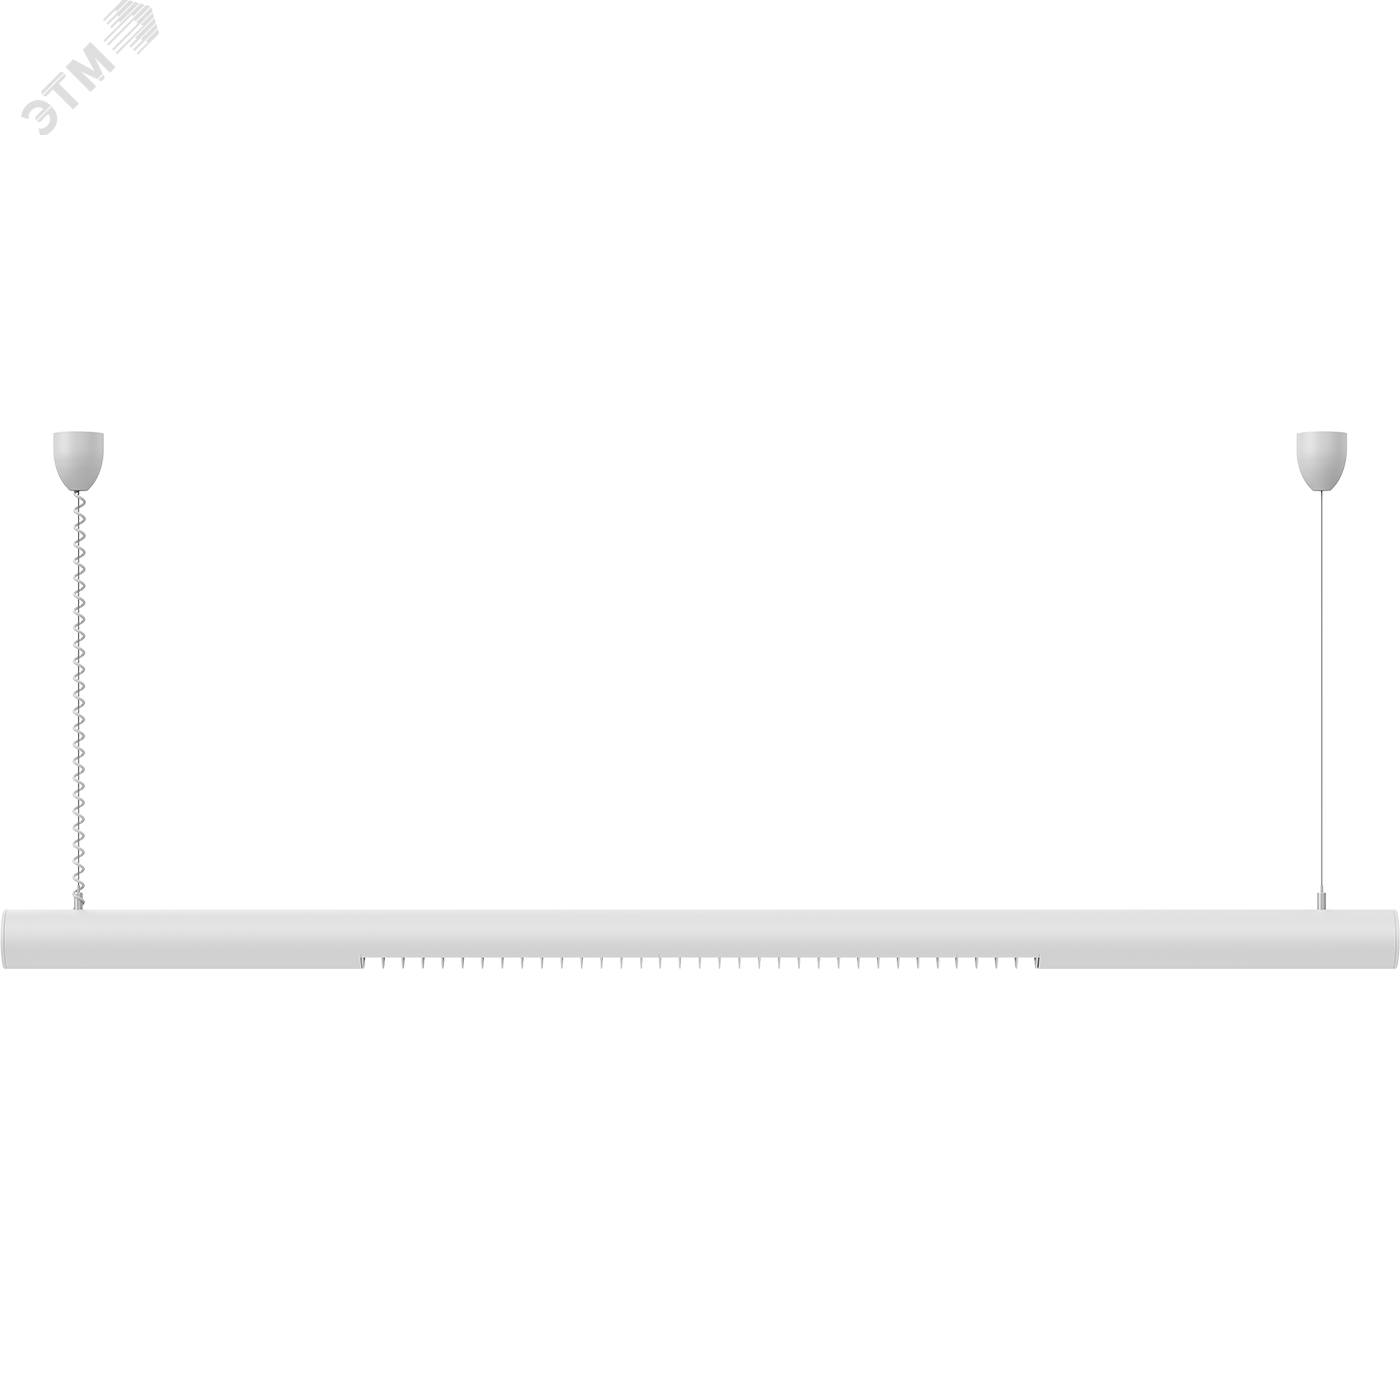 Светильник RING 1x18 HF подвесной круглый профиль с ЭПРА 1303000020 Световые Технологии - превью 7